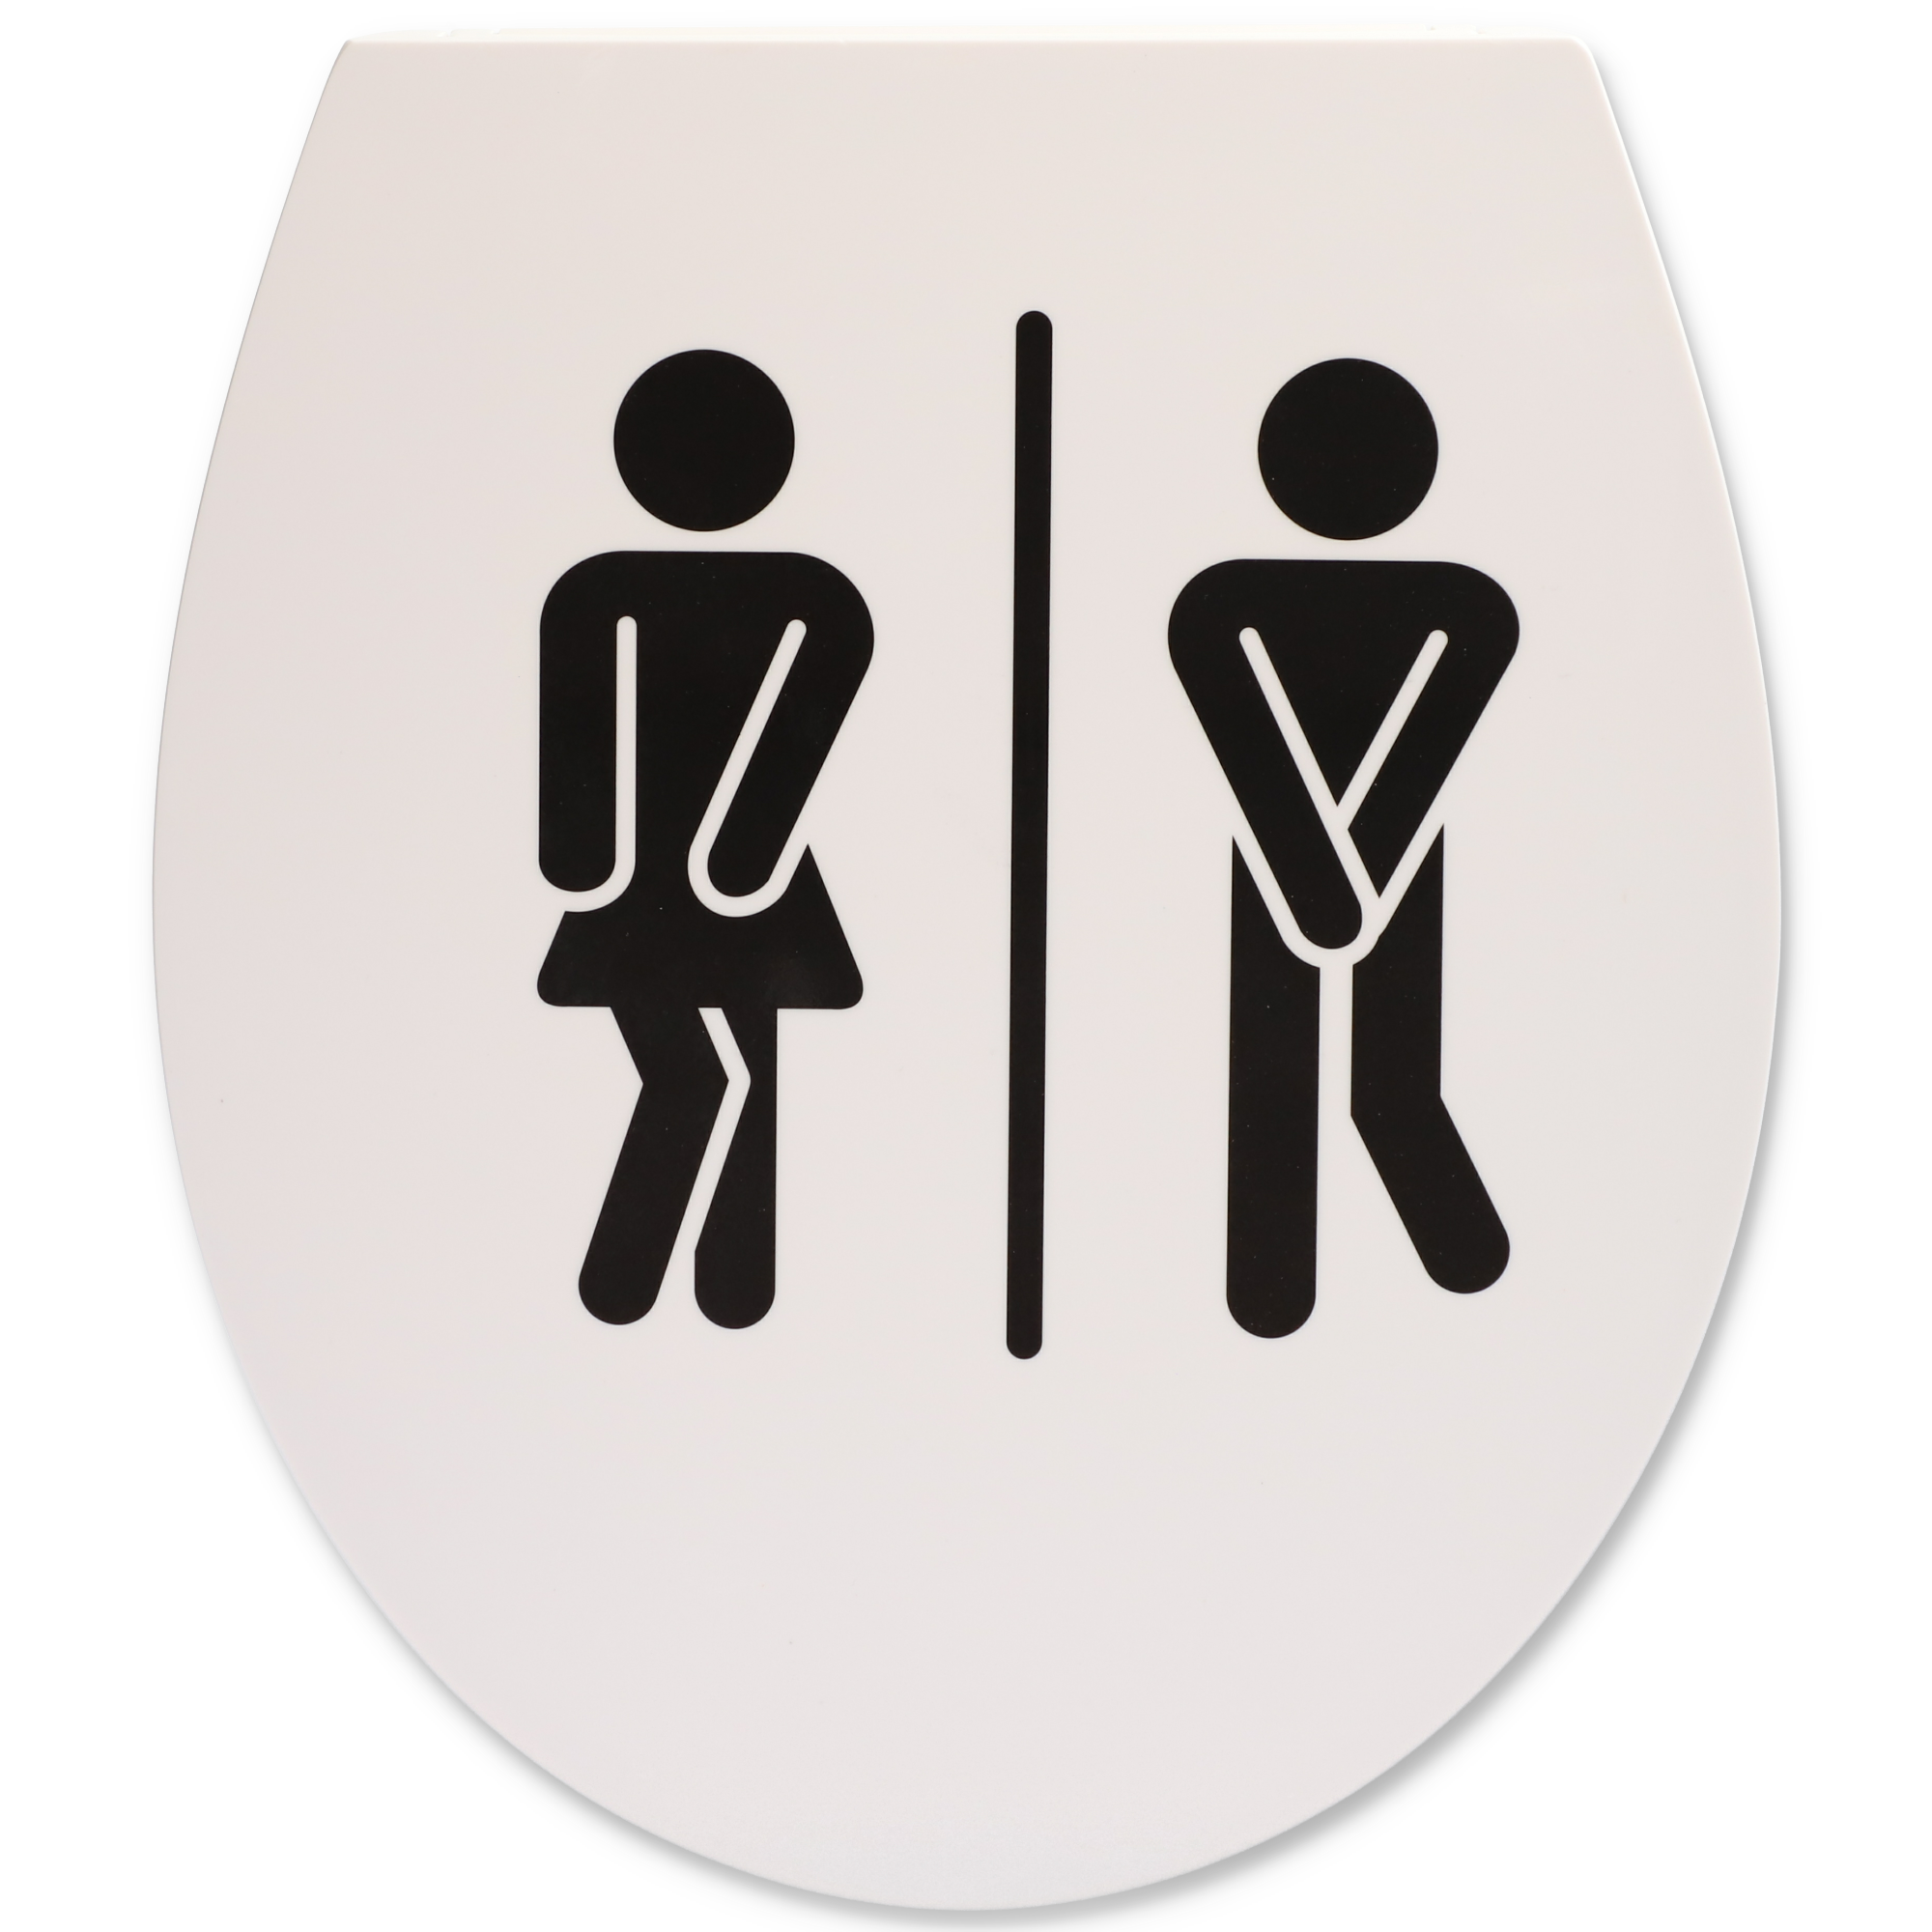 WC-Sitz 'Ladies & Gents' mit Absenkautomatik weiß/schwarz 44,6 x 37,9 cm + product picture